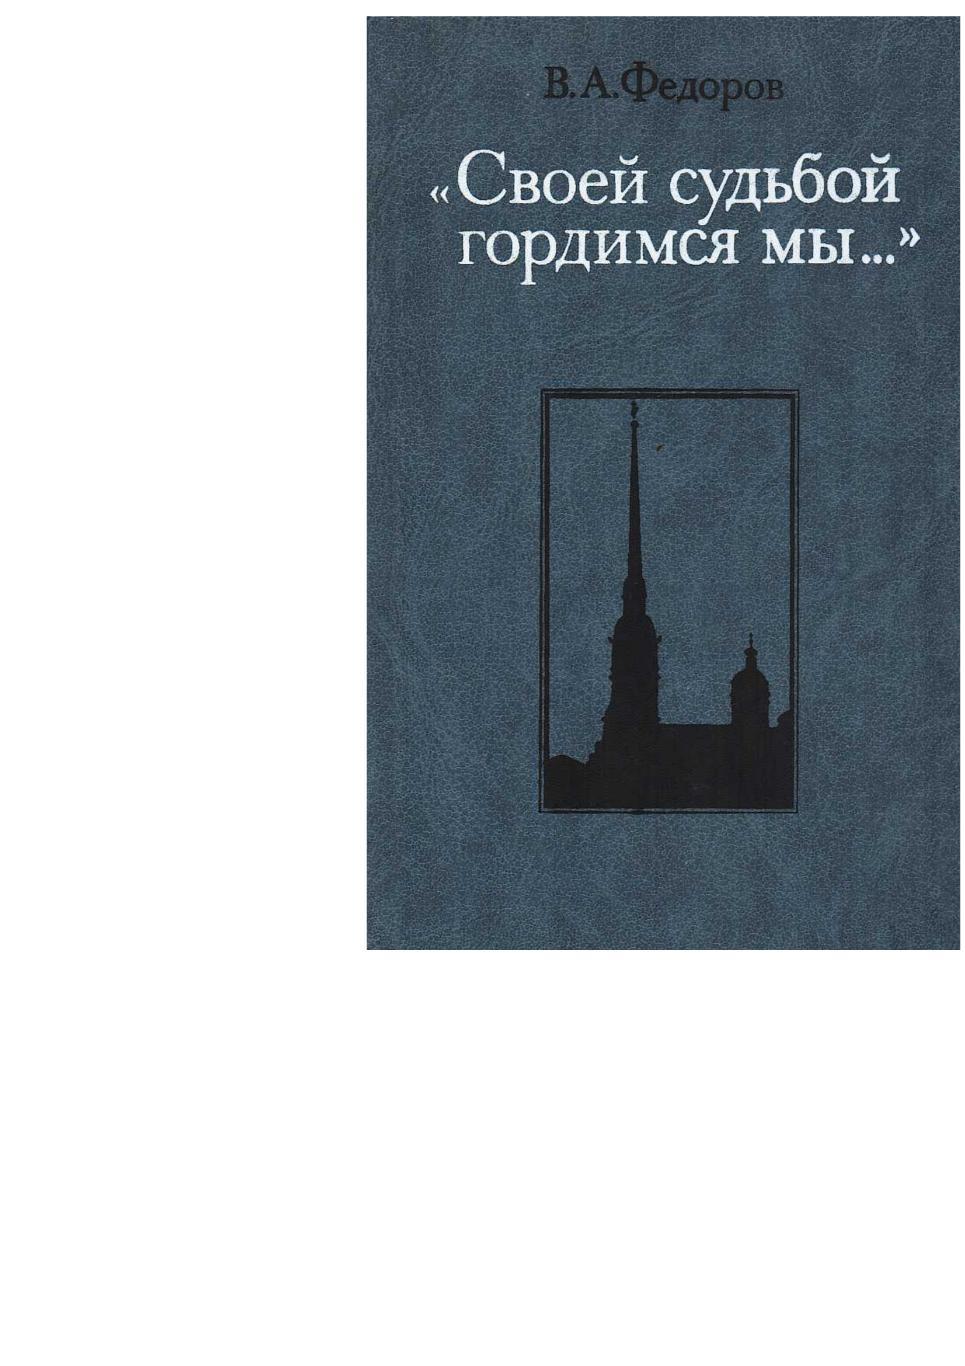 Фёдоров В.А. «Своей судьбой гордимся мы…». – М., 1988.